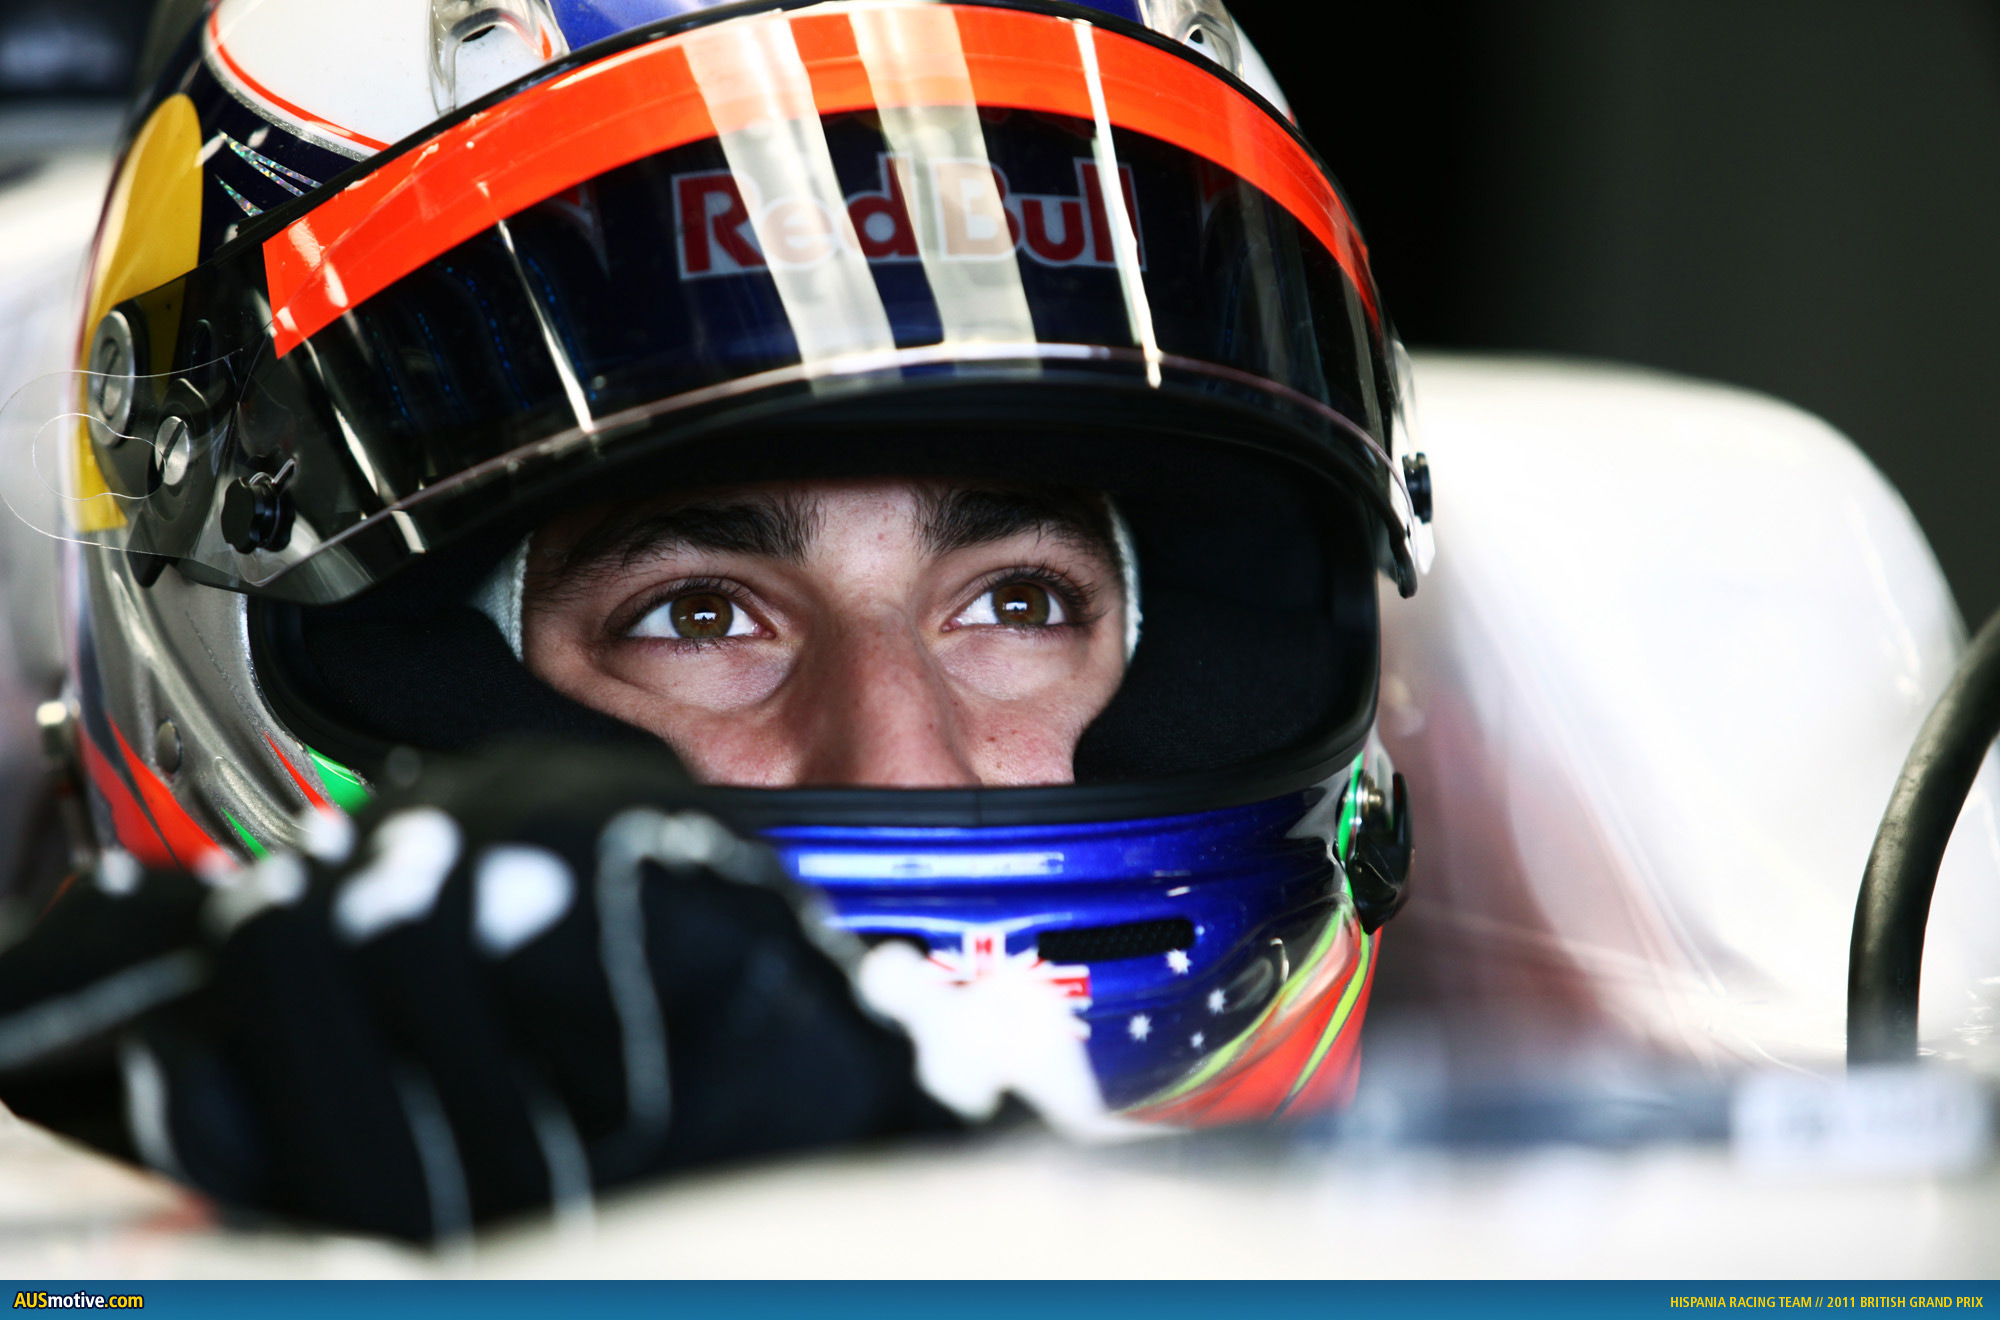 AUSmotive.com » Q&A with Daniel Ricciardo